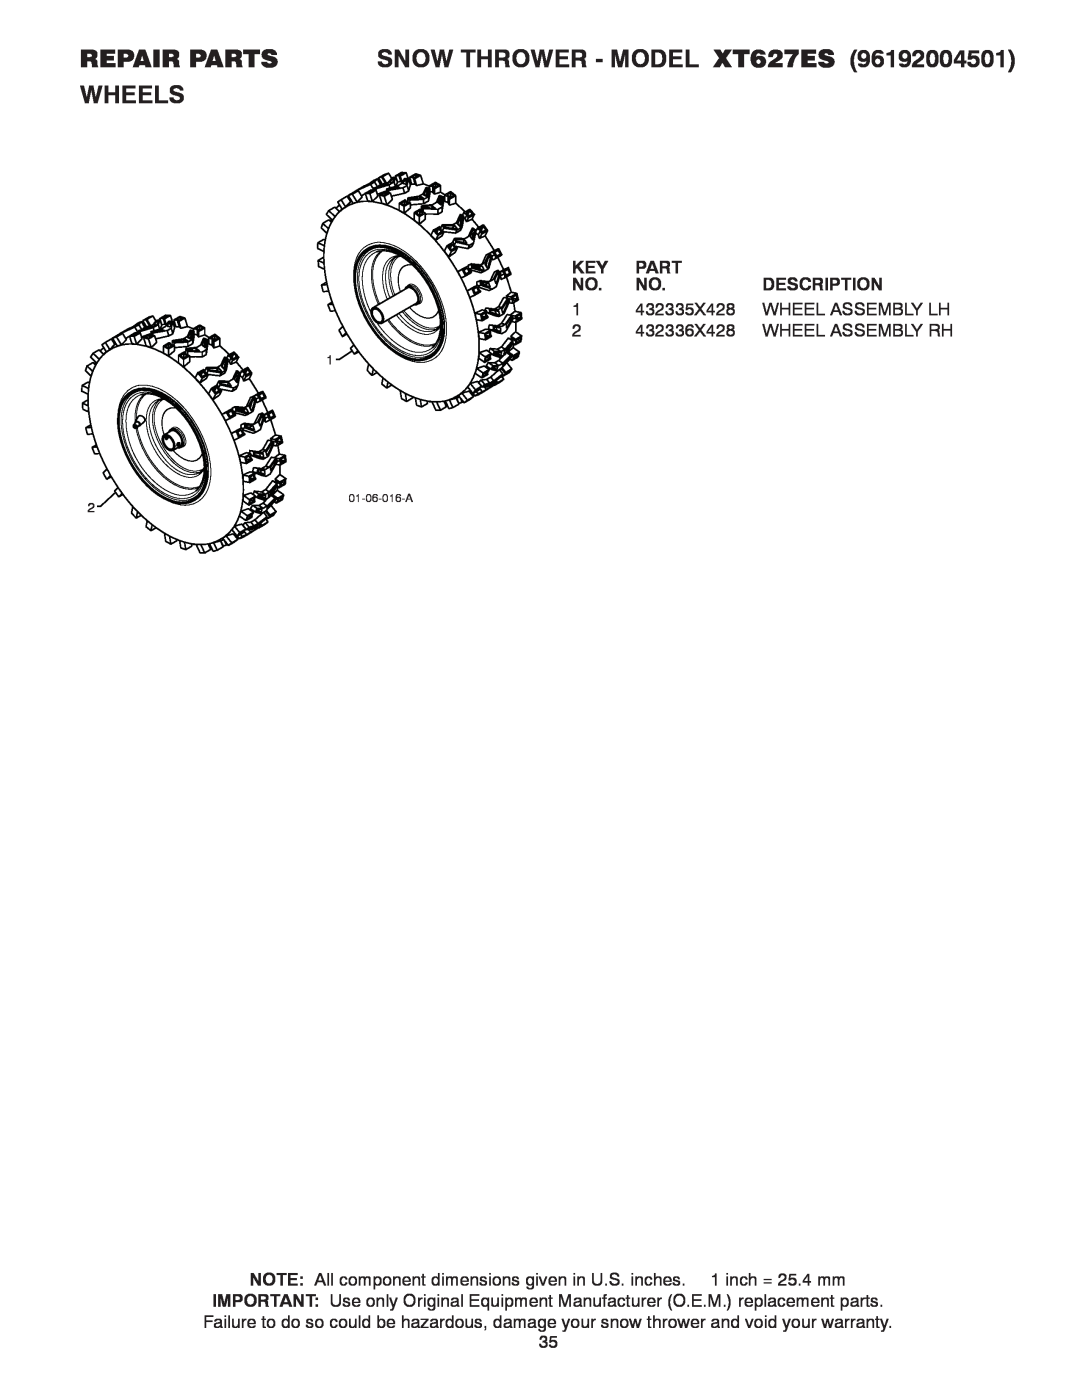 Poulan 96192004501 REPAIR PARTS SNOW THROWER - MODEL XT627ES WHEELS, Part, Description, 432335X428, Wheel Assembly Lh 